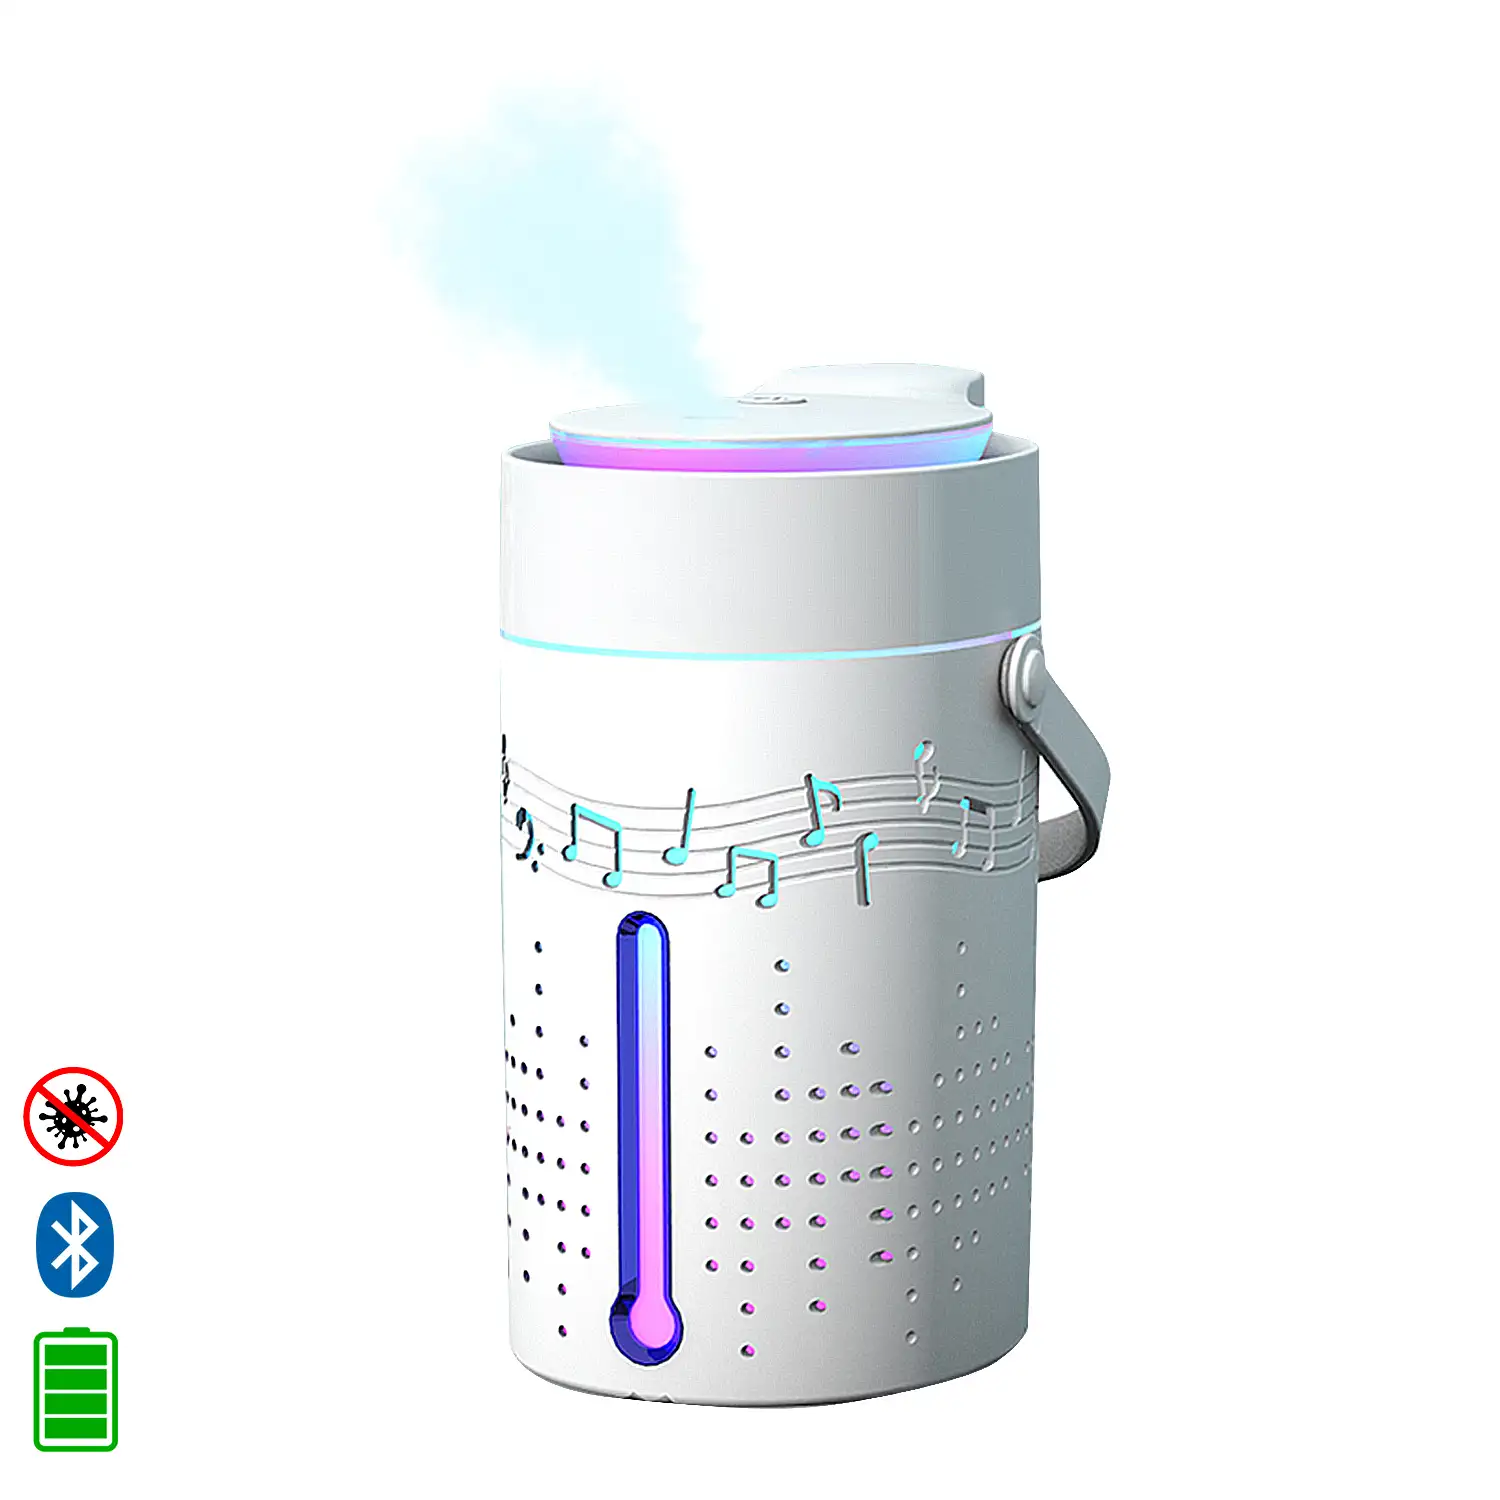 Nebulizador esterilizador multifunción (admite hidroalcohol) 1000 ml.